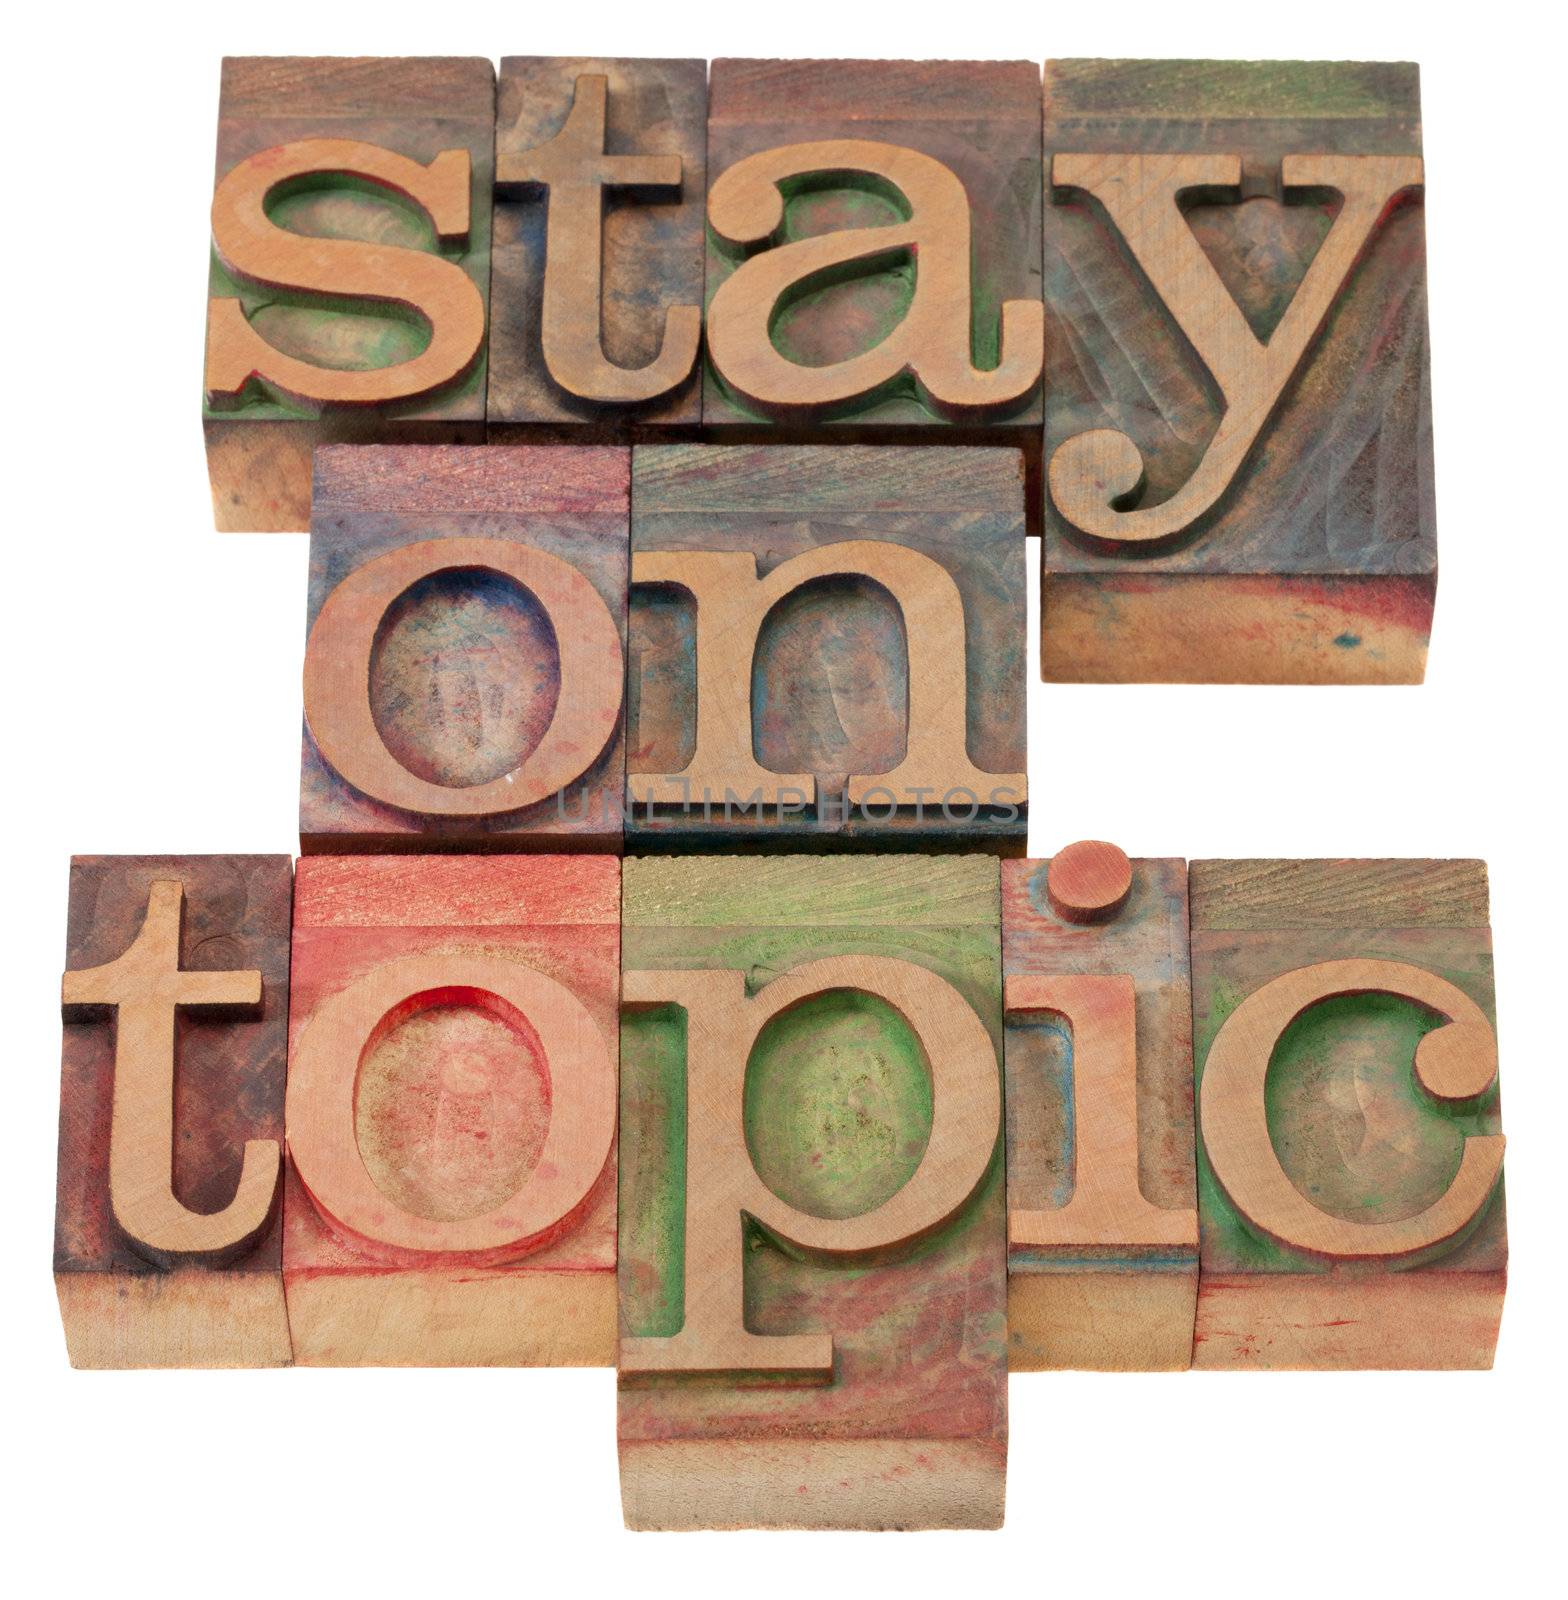 stay on topic in letterpress type by PixelsAway